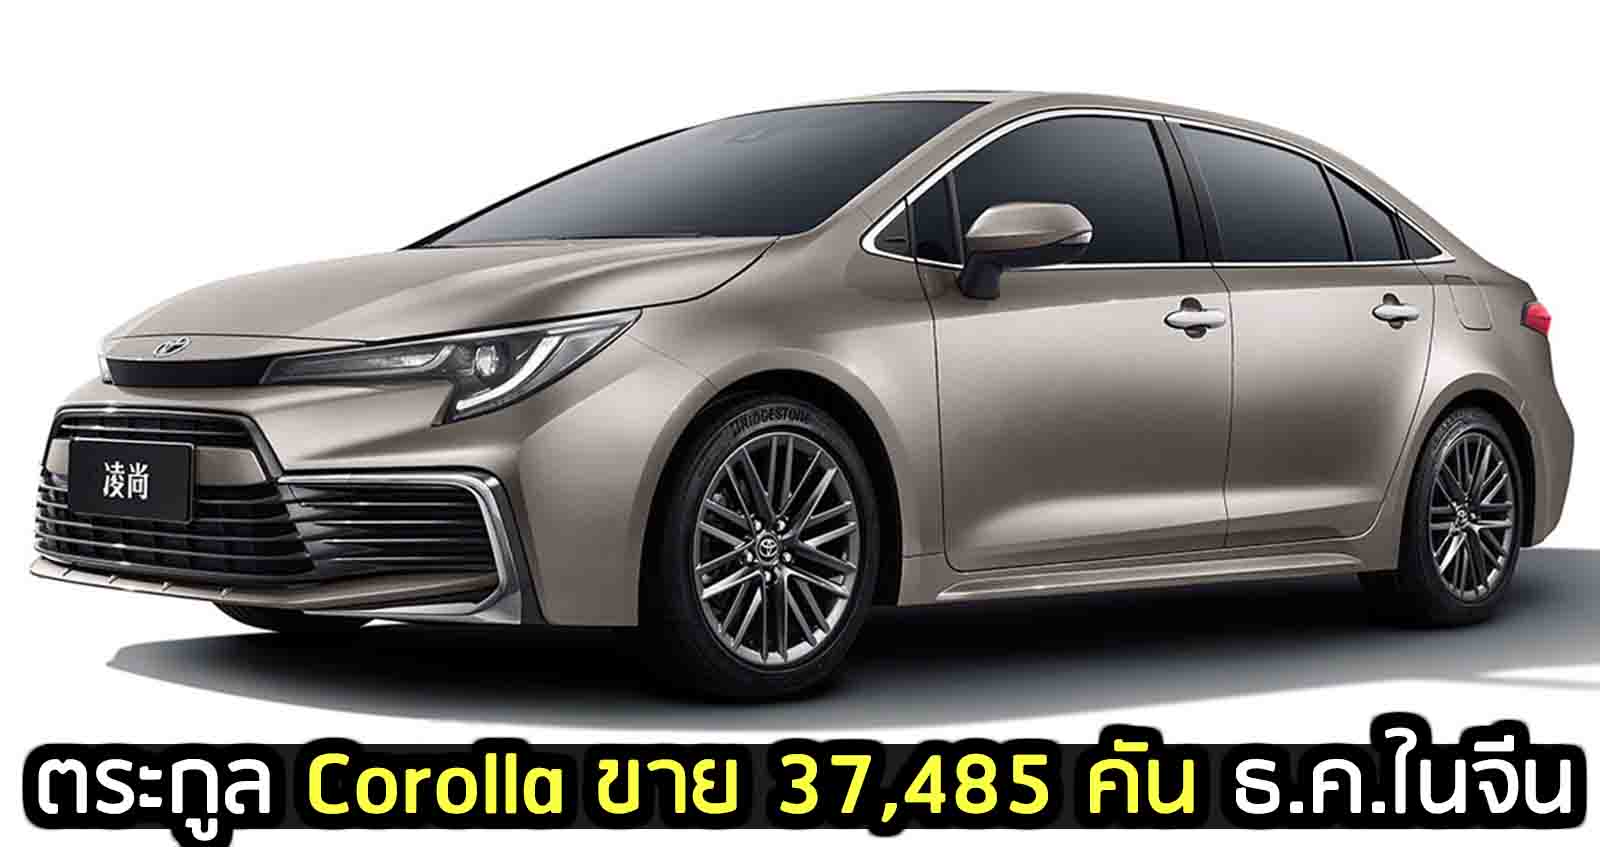 ตระกูล Corolla ยอดขาย 37,485 คัน ธันวาคม 2020 ในจีน